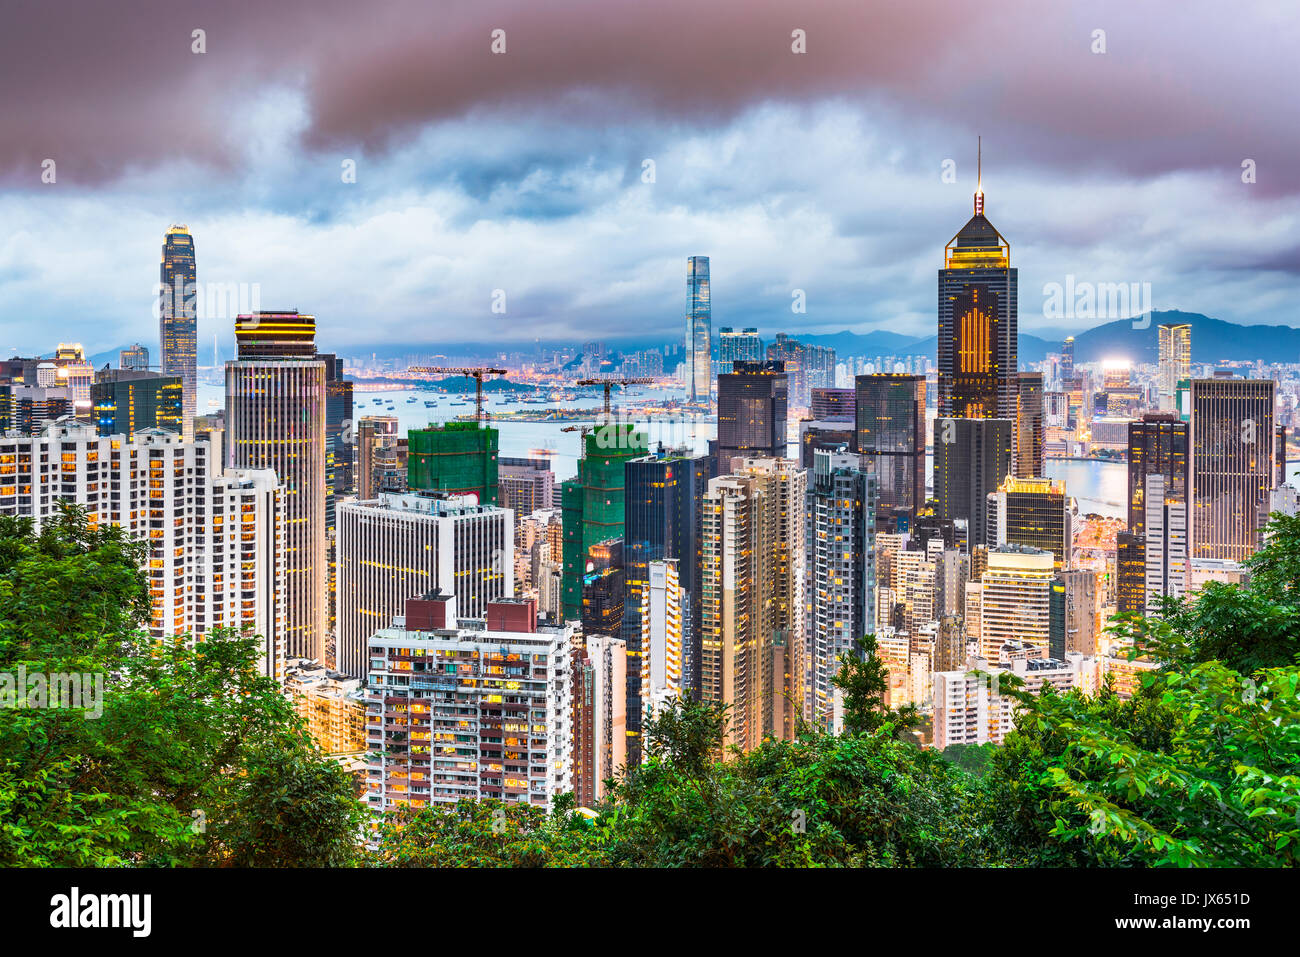 Hong Kong, China city skyline at dusk. Stock Photo